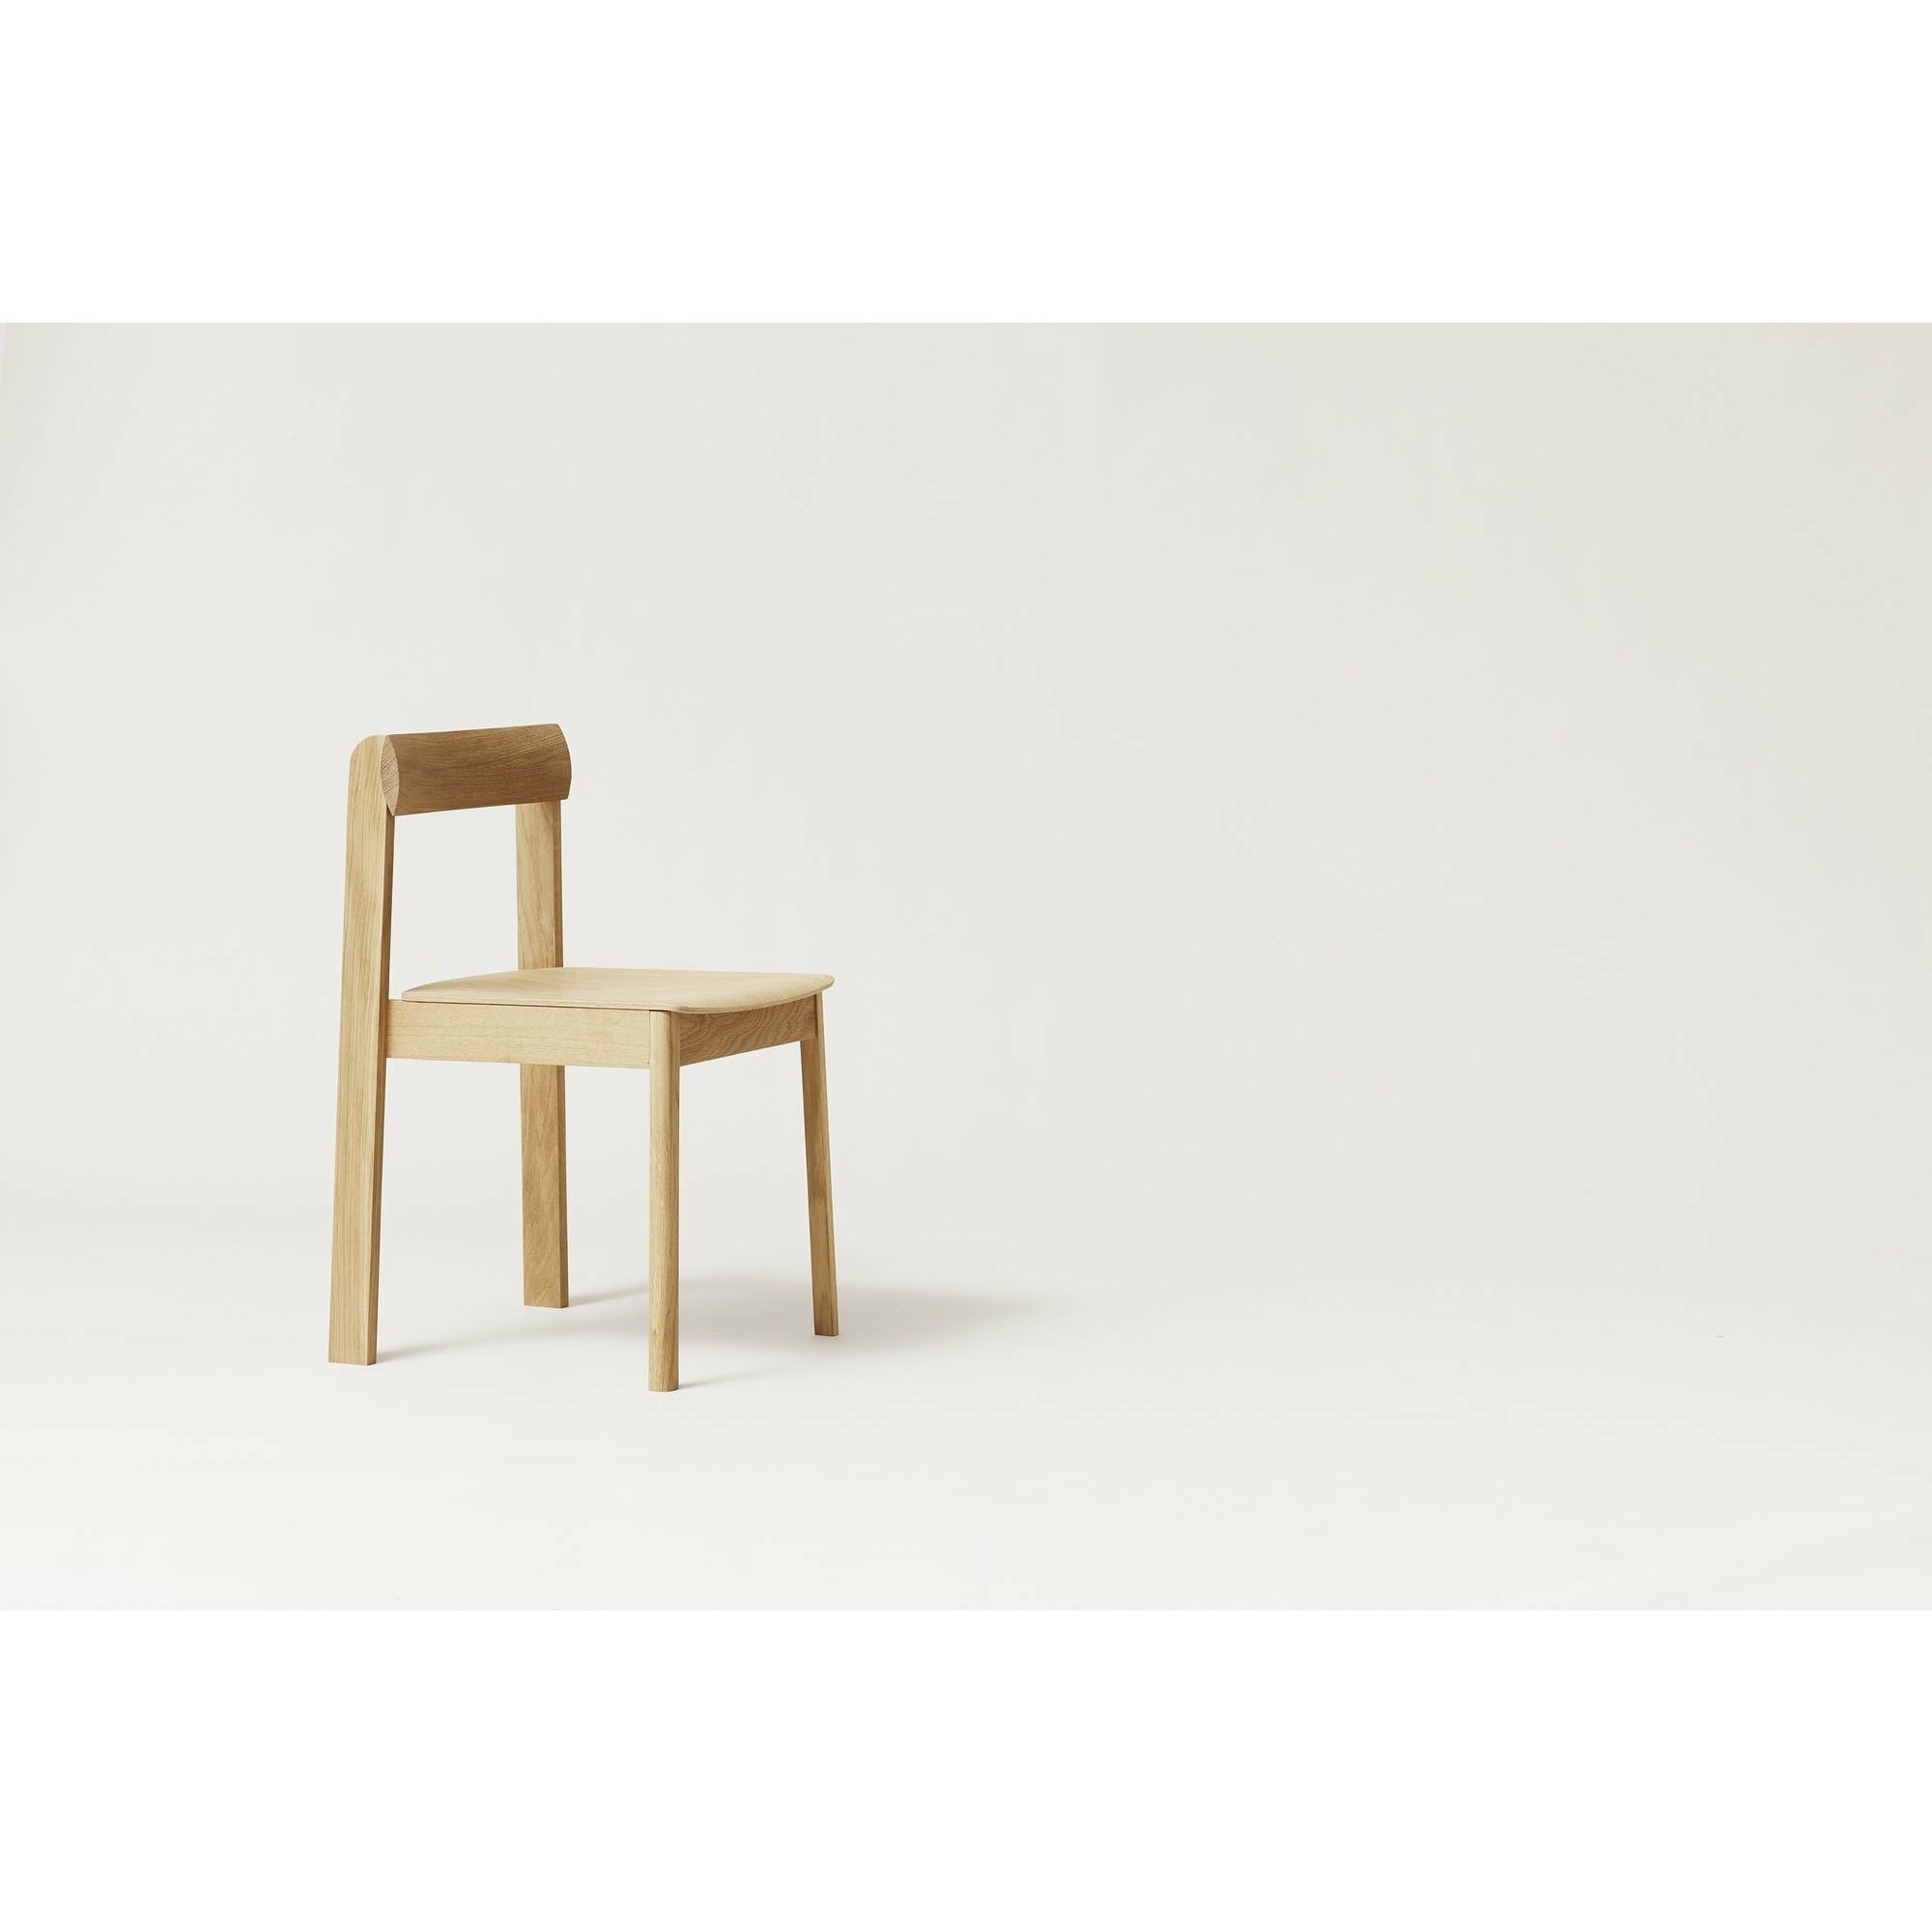 Form & Refine Blauwdrukstoel. witte eik